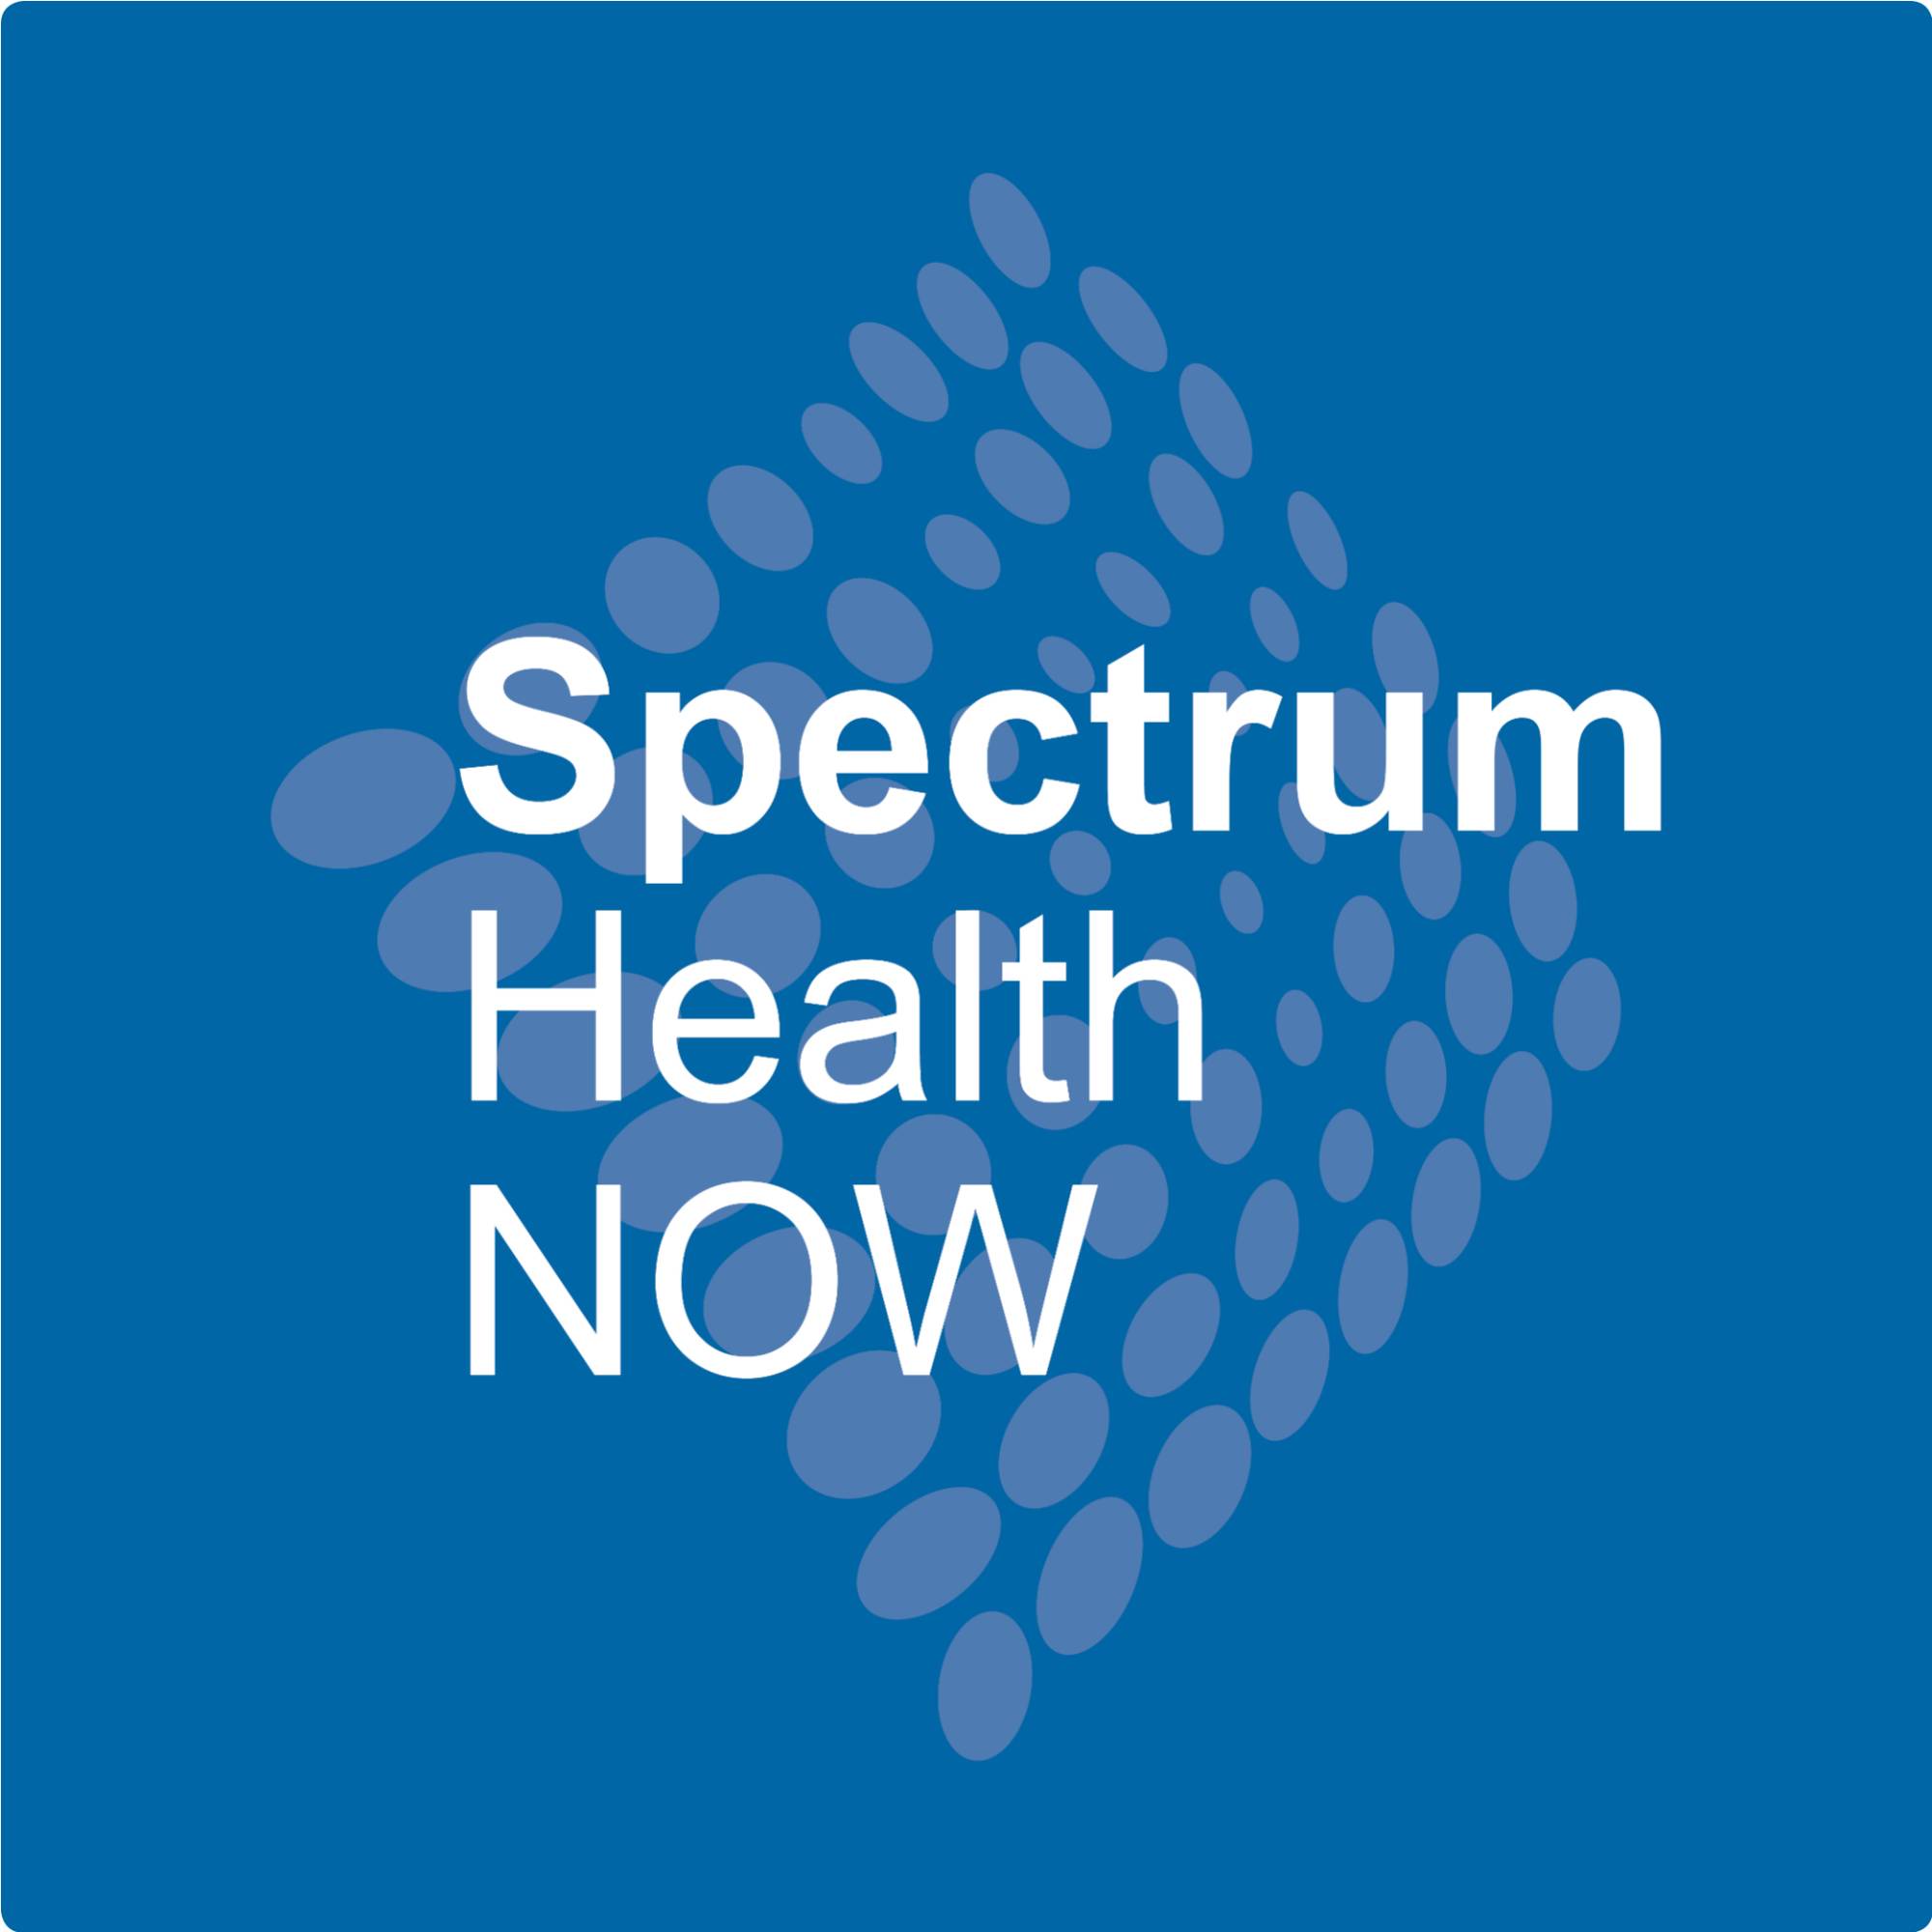 Spectrum Health Now